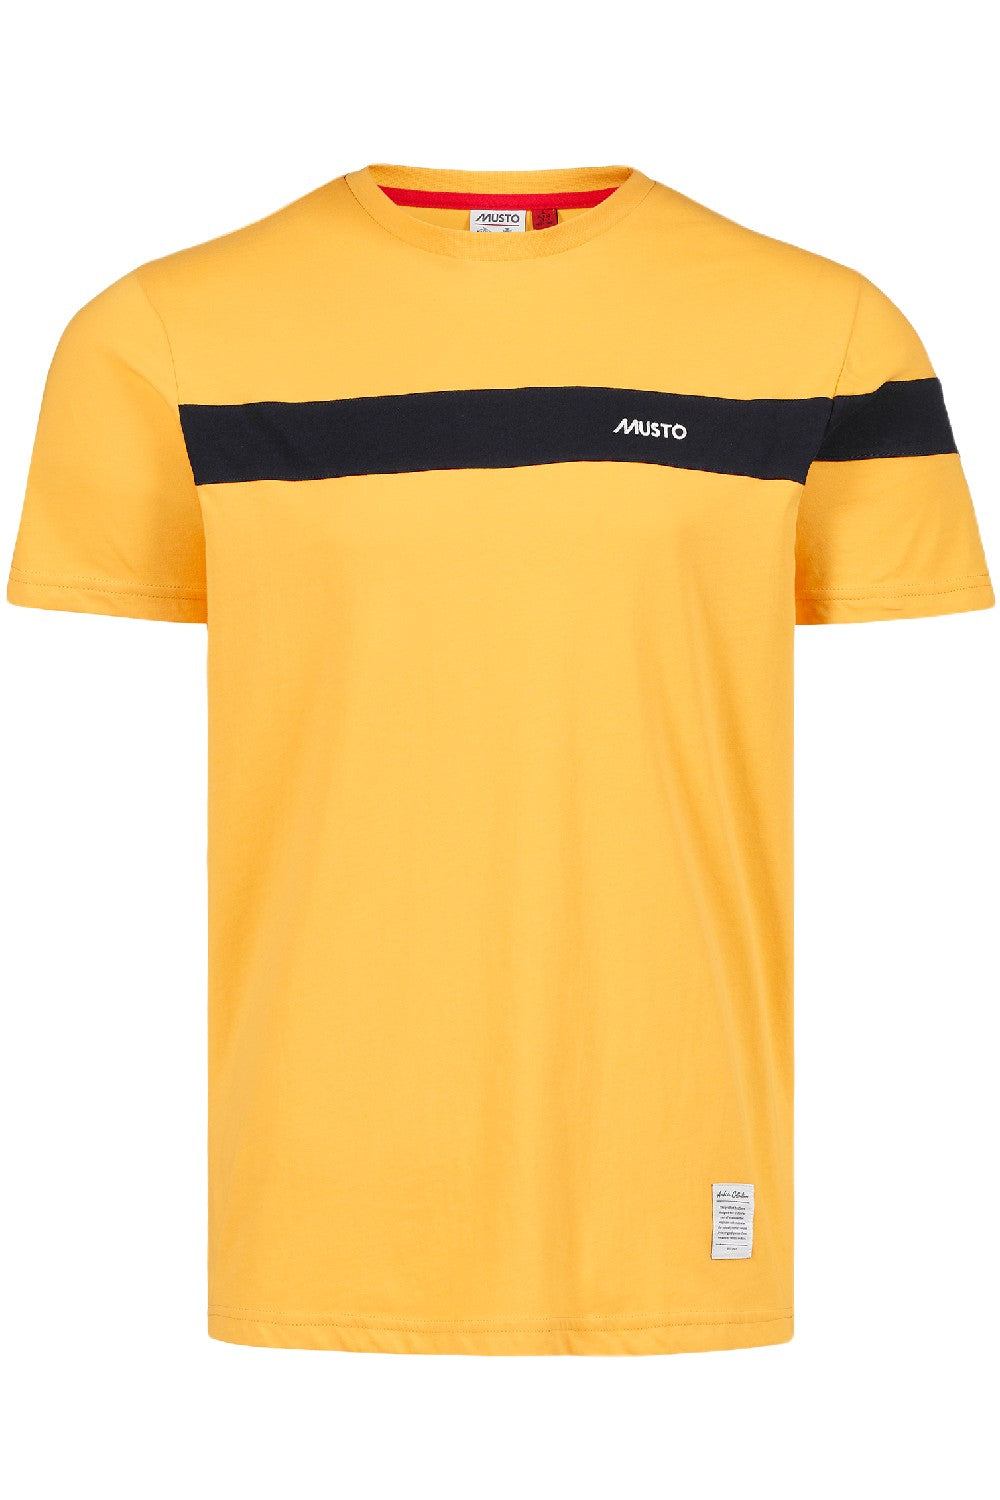 Musto 64 T-Shirt Yellow